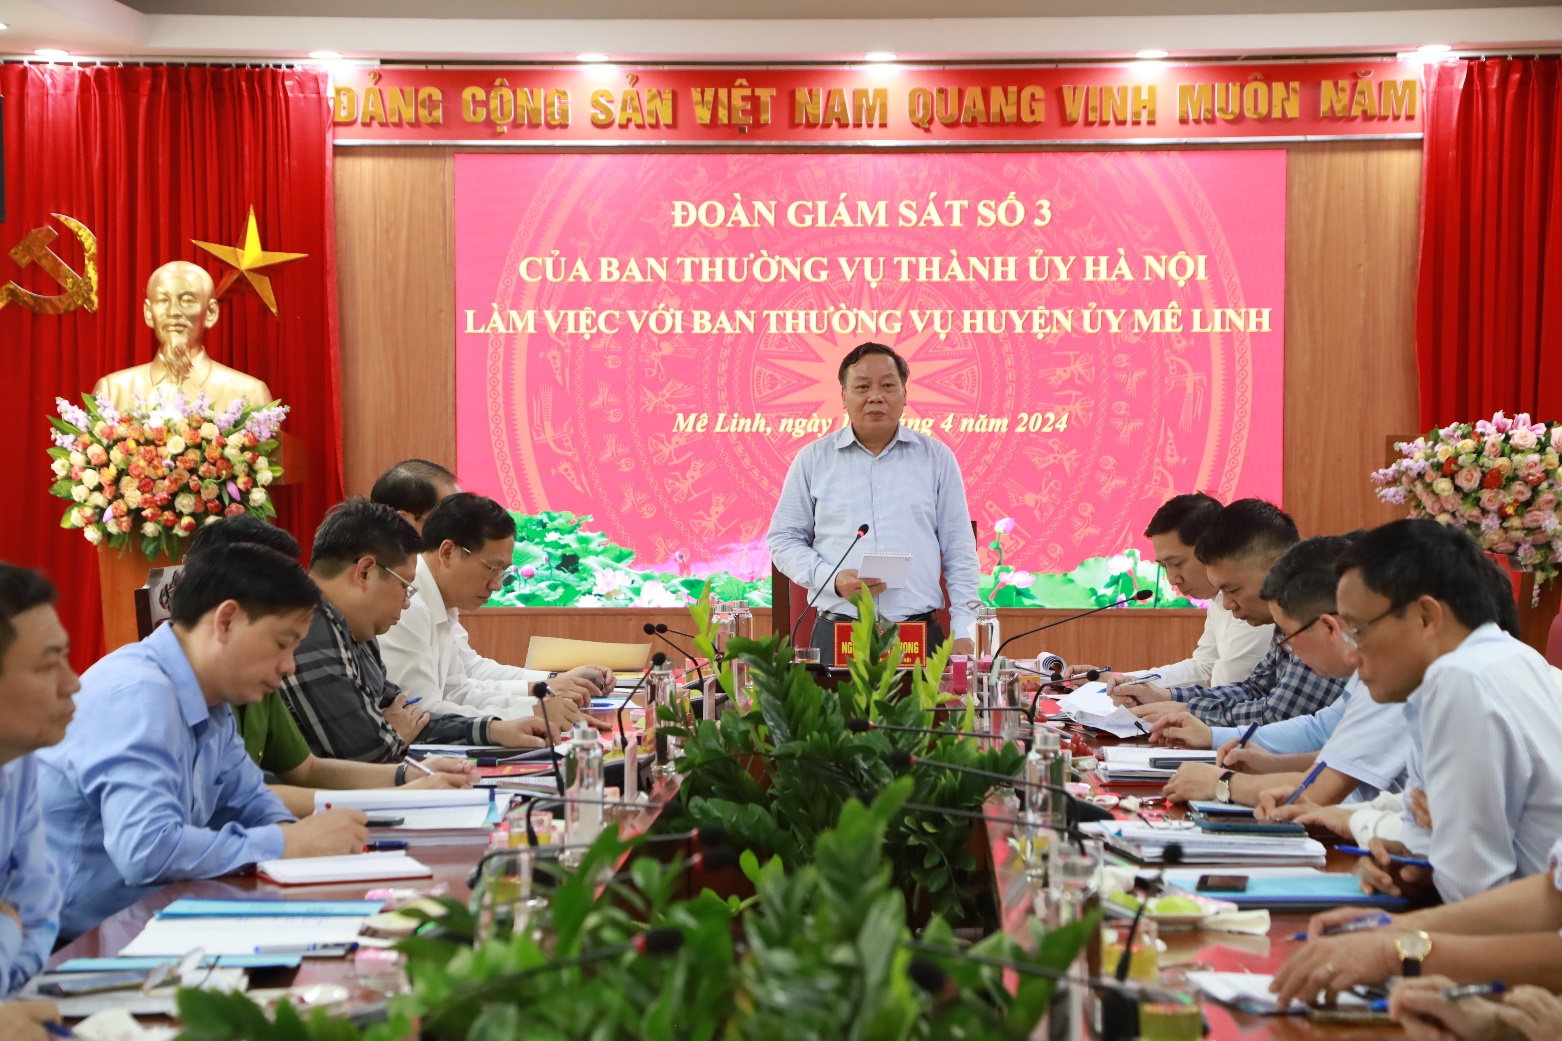 Đoàn giám sát của Ban Thường vụ Thành ủy làm việc với Ban Thường vụ Huyện ủy Mê Linh- Ảnh 1.